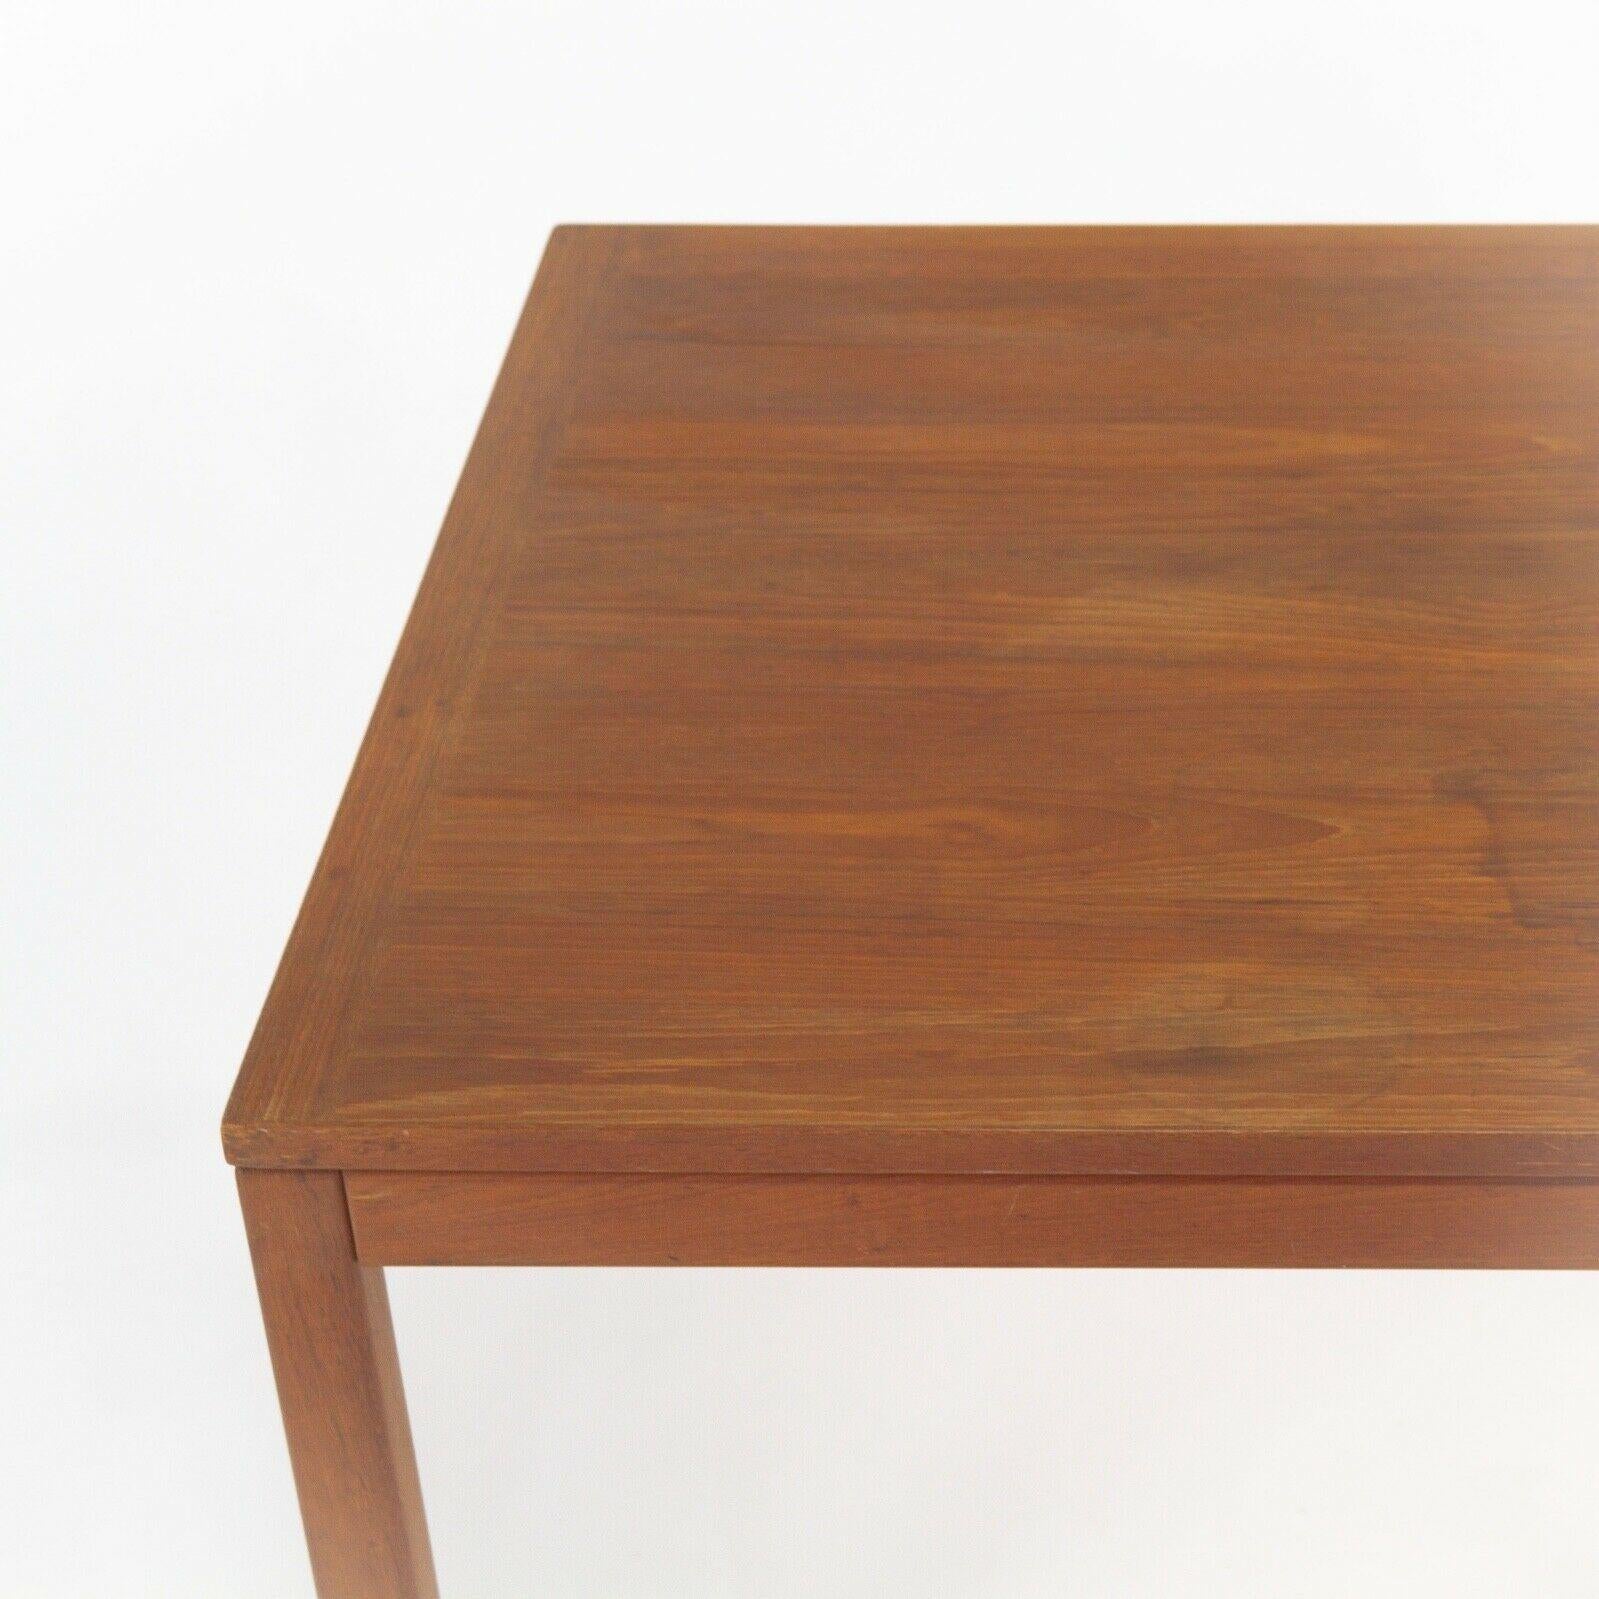 1960s Danish Teak End Table by Henning Kjaernulf for Vejle Stole & Mobelfabrik For Sale 2